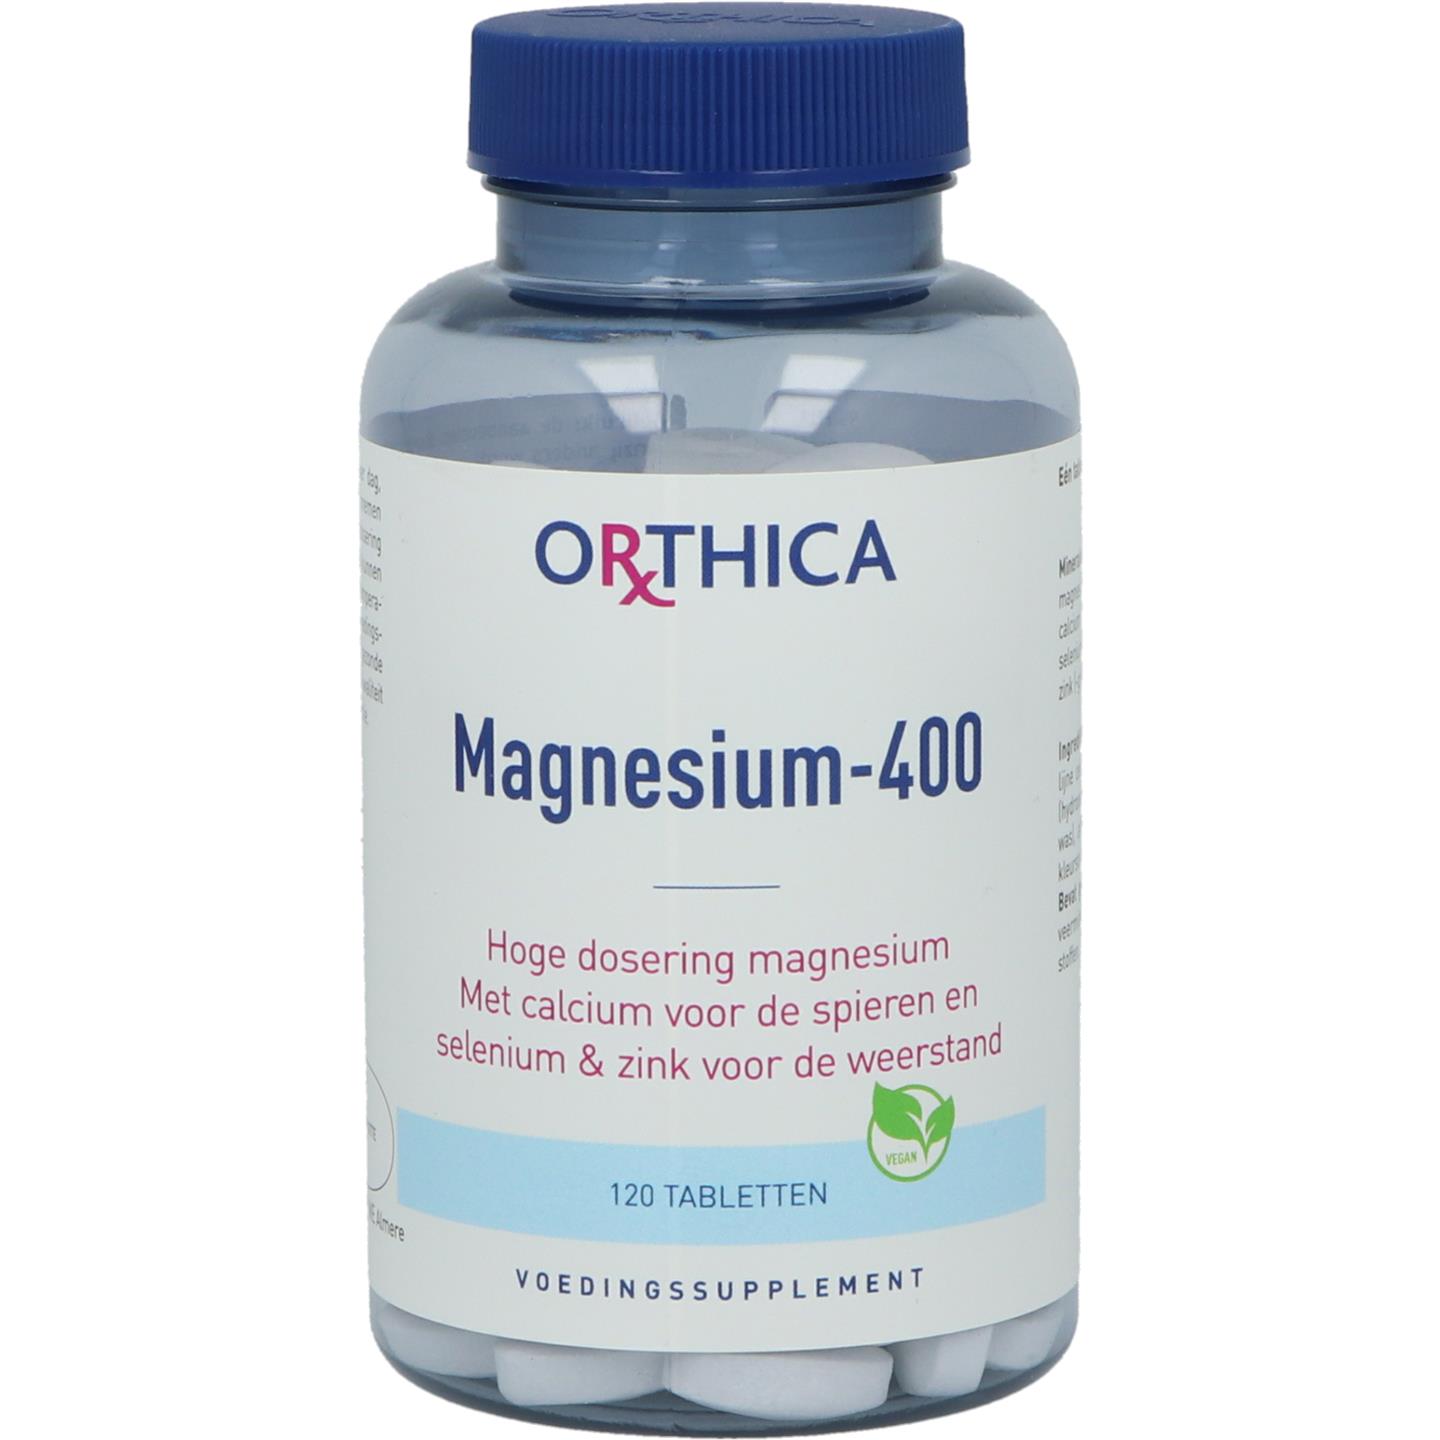 Claire schandaal verkopen Magnesium-400 (Orthica)